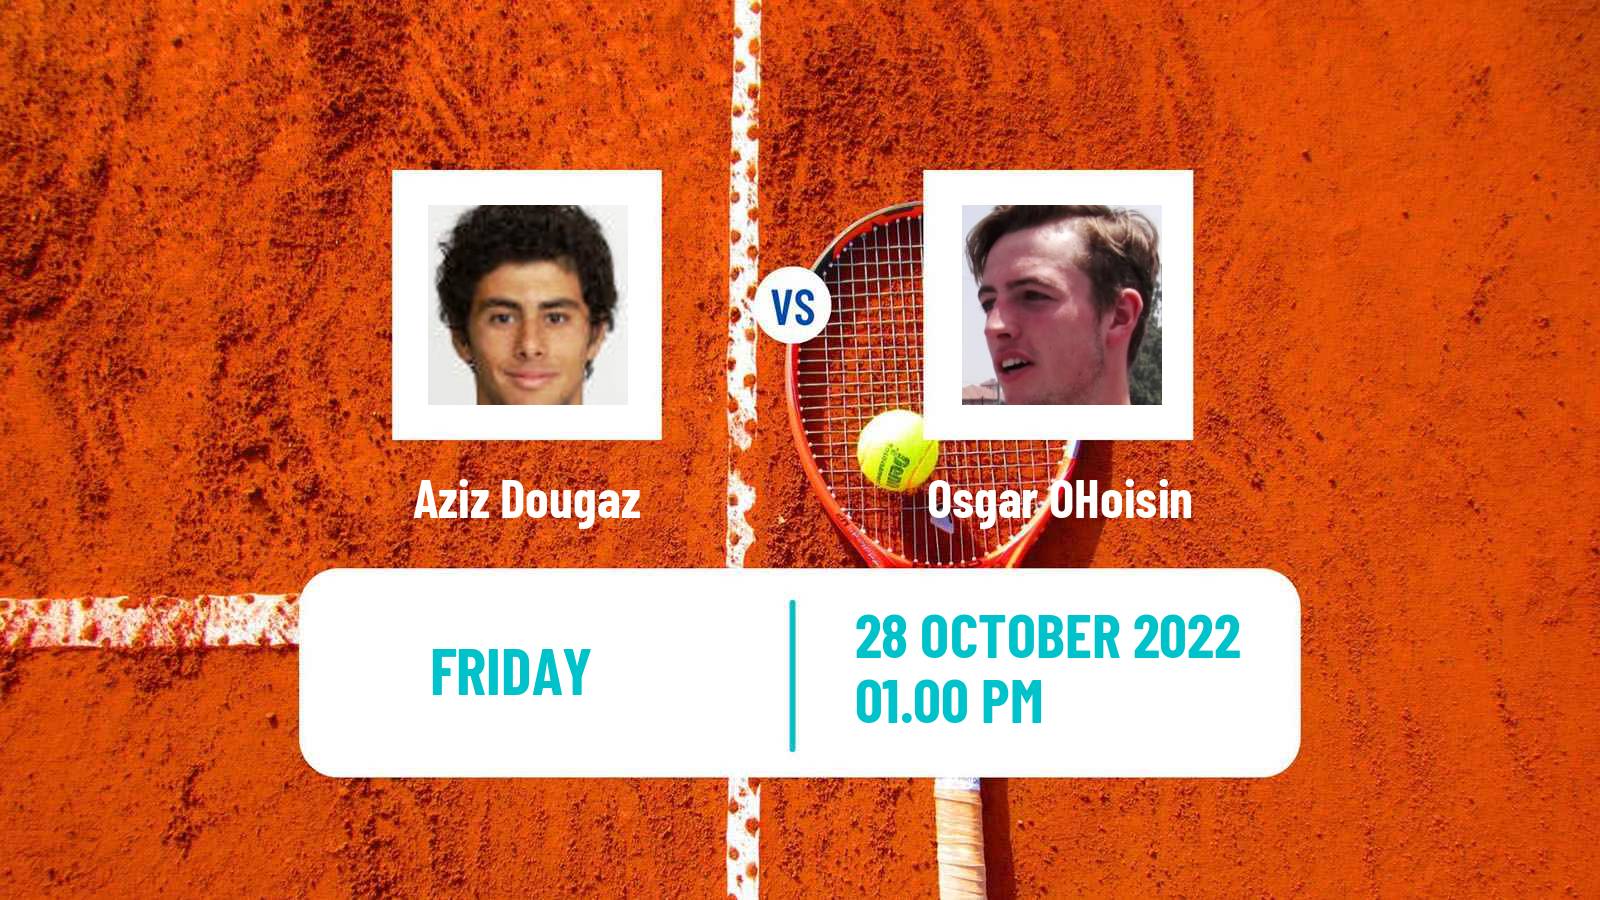 Tennis ITF Tournaments Aziz Dougaz - Osgar OHoisin